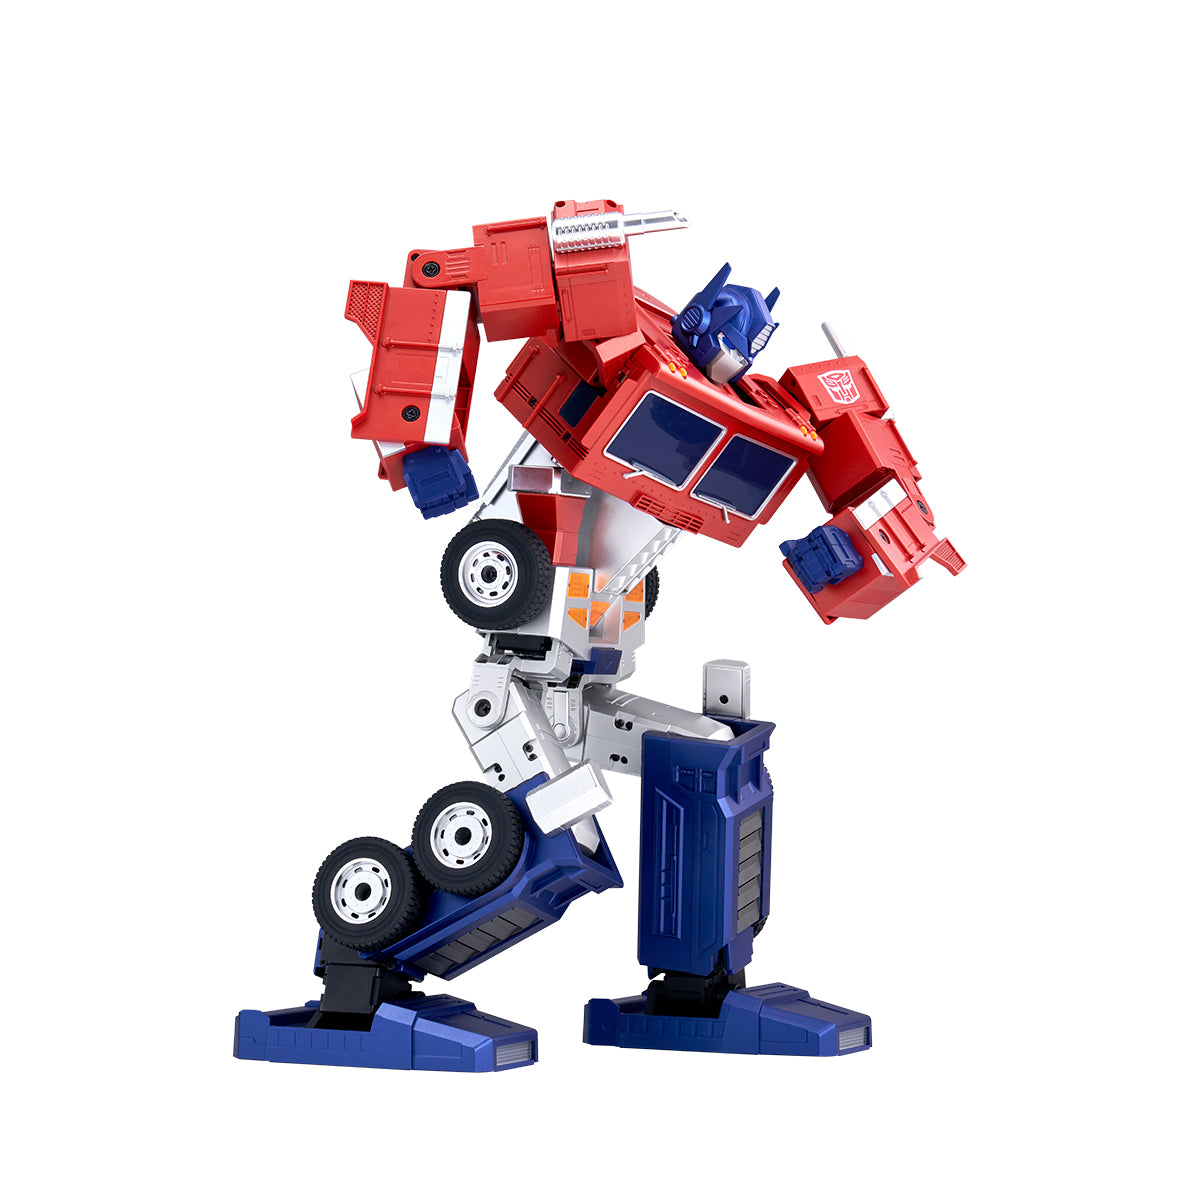 Elite Optimus Prime Auto-converting Robot